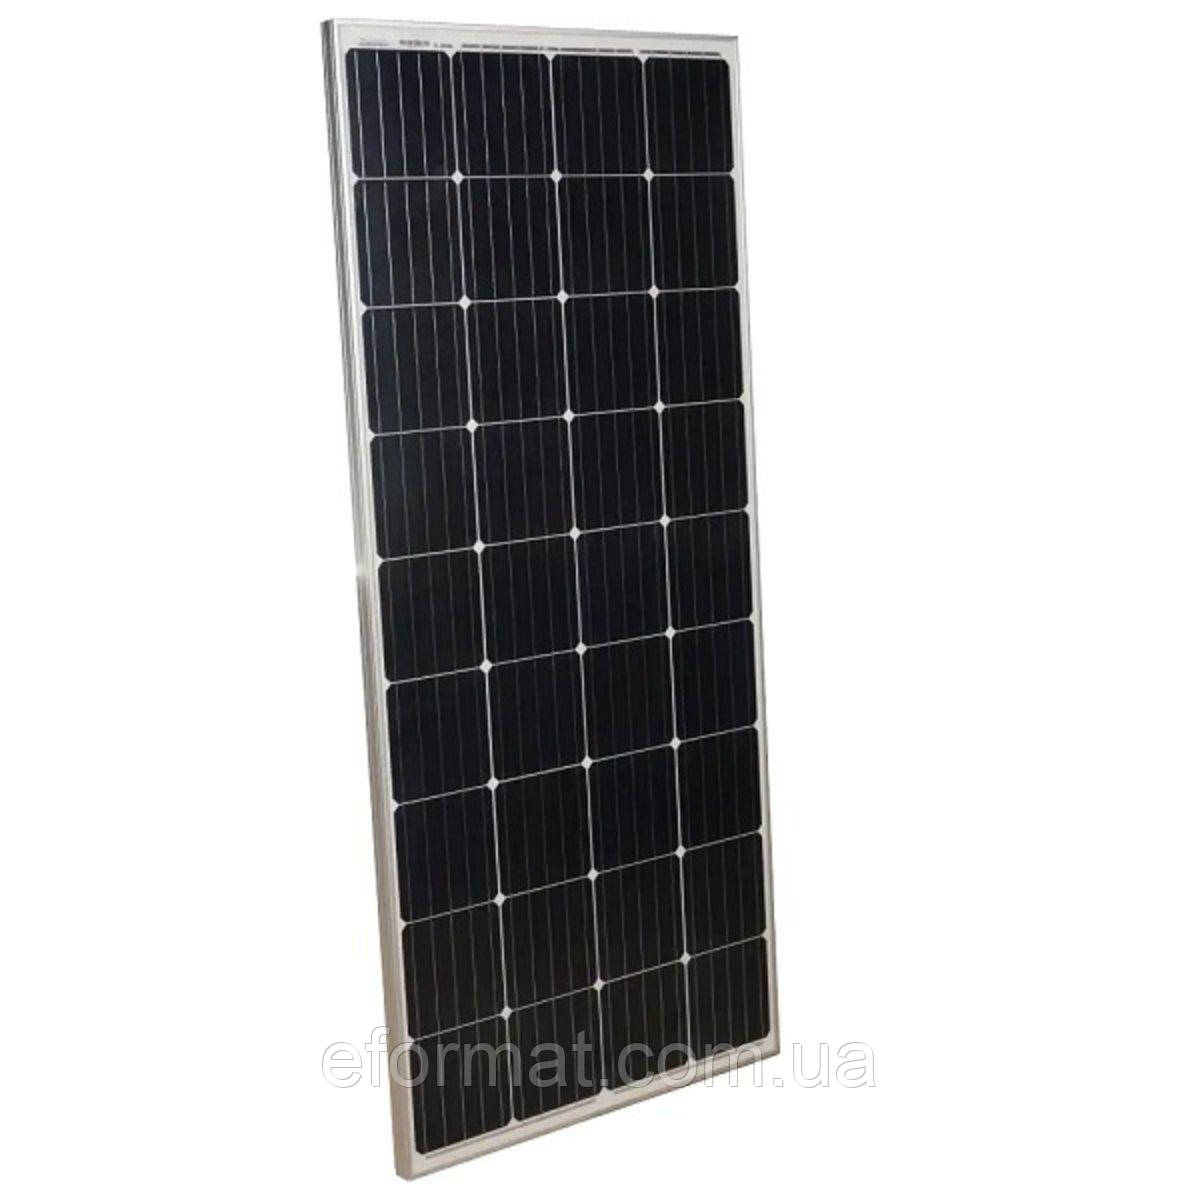 Сонячна панель Victron Energy 115W-12V series 4а, 115 Вт, монокристал